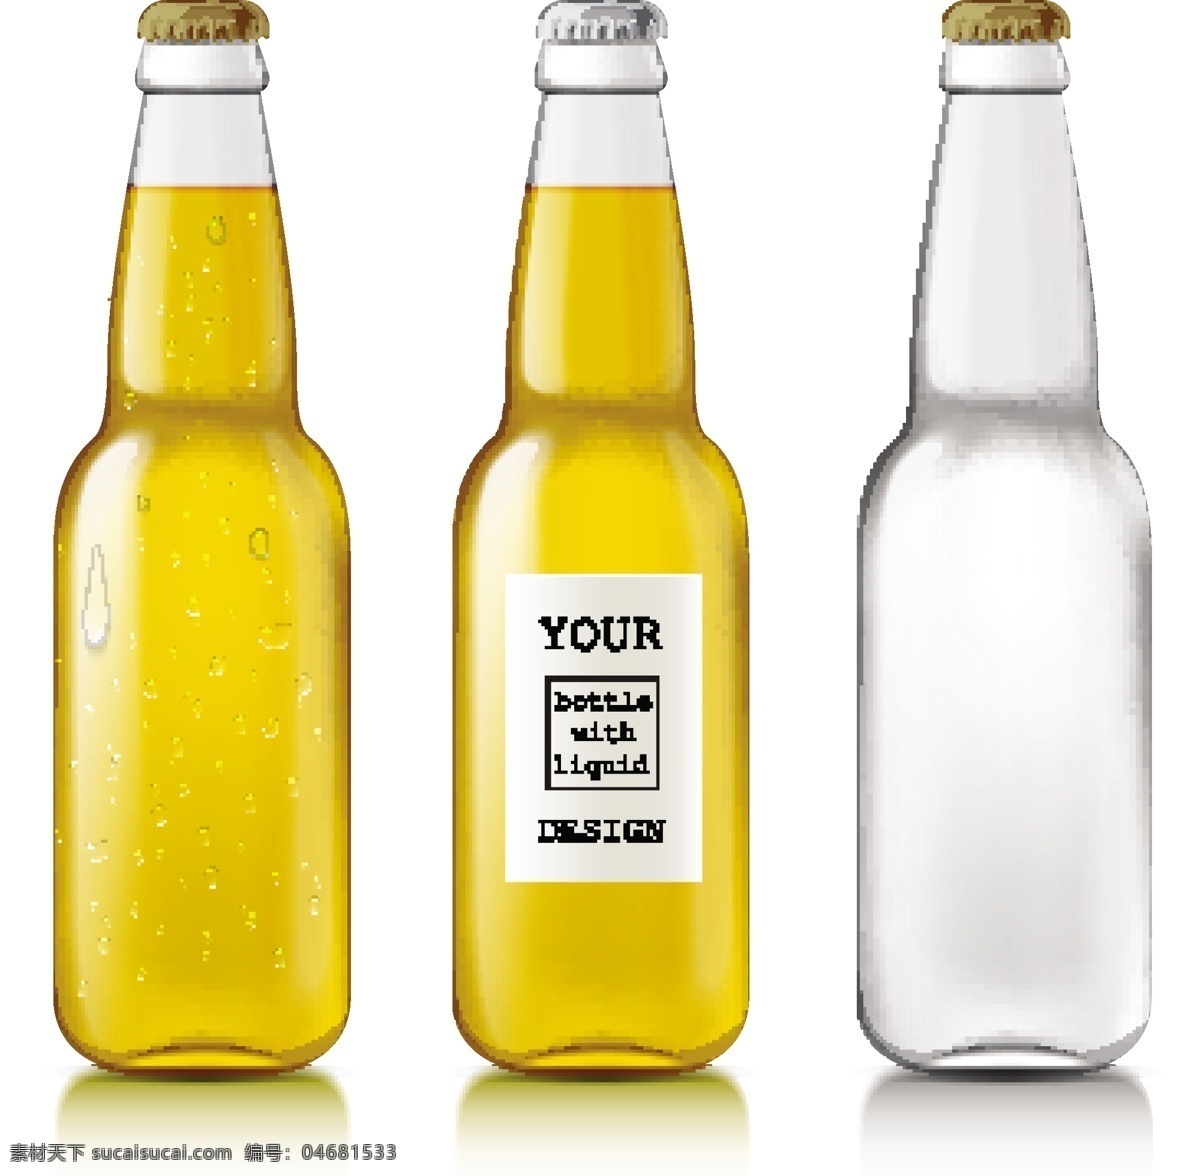 啤酒瓶 啤酒包装 酒瓶 啤酒 玻璃瓶 瓶子 器皿 容器 调料瓶 饮料瓶 插画